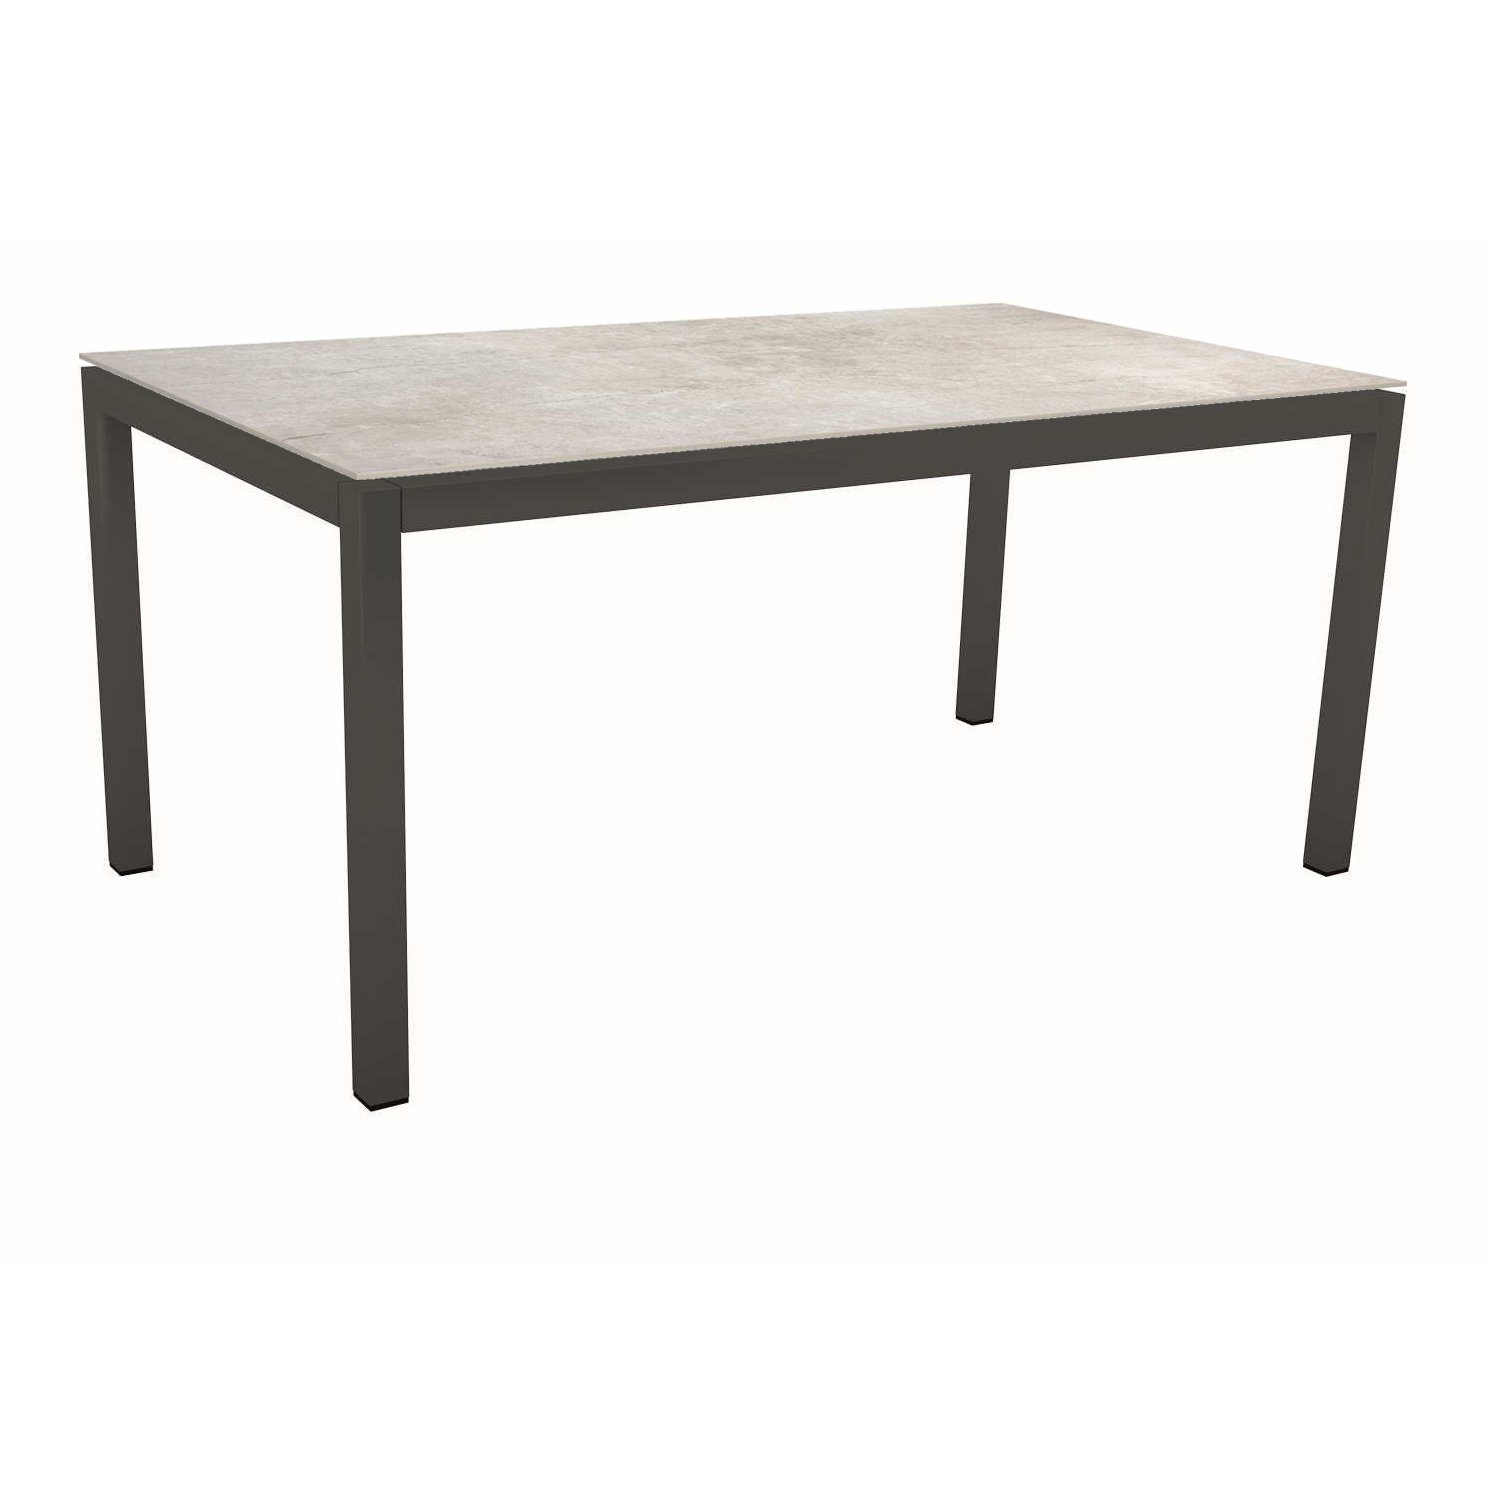 Stern Tischsystem, Gestell Aluminium anthrazit, Tischplatte Dekton Lava hellgrau, 160x90 cm